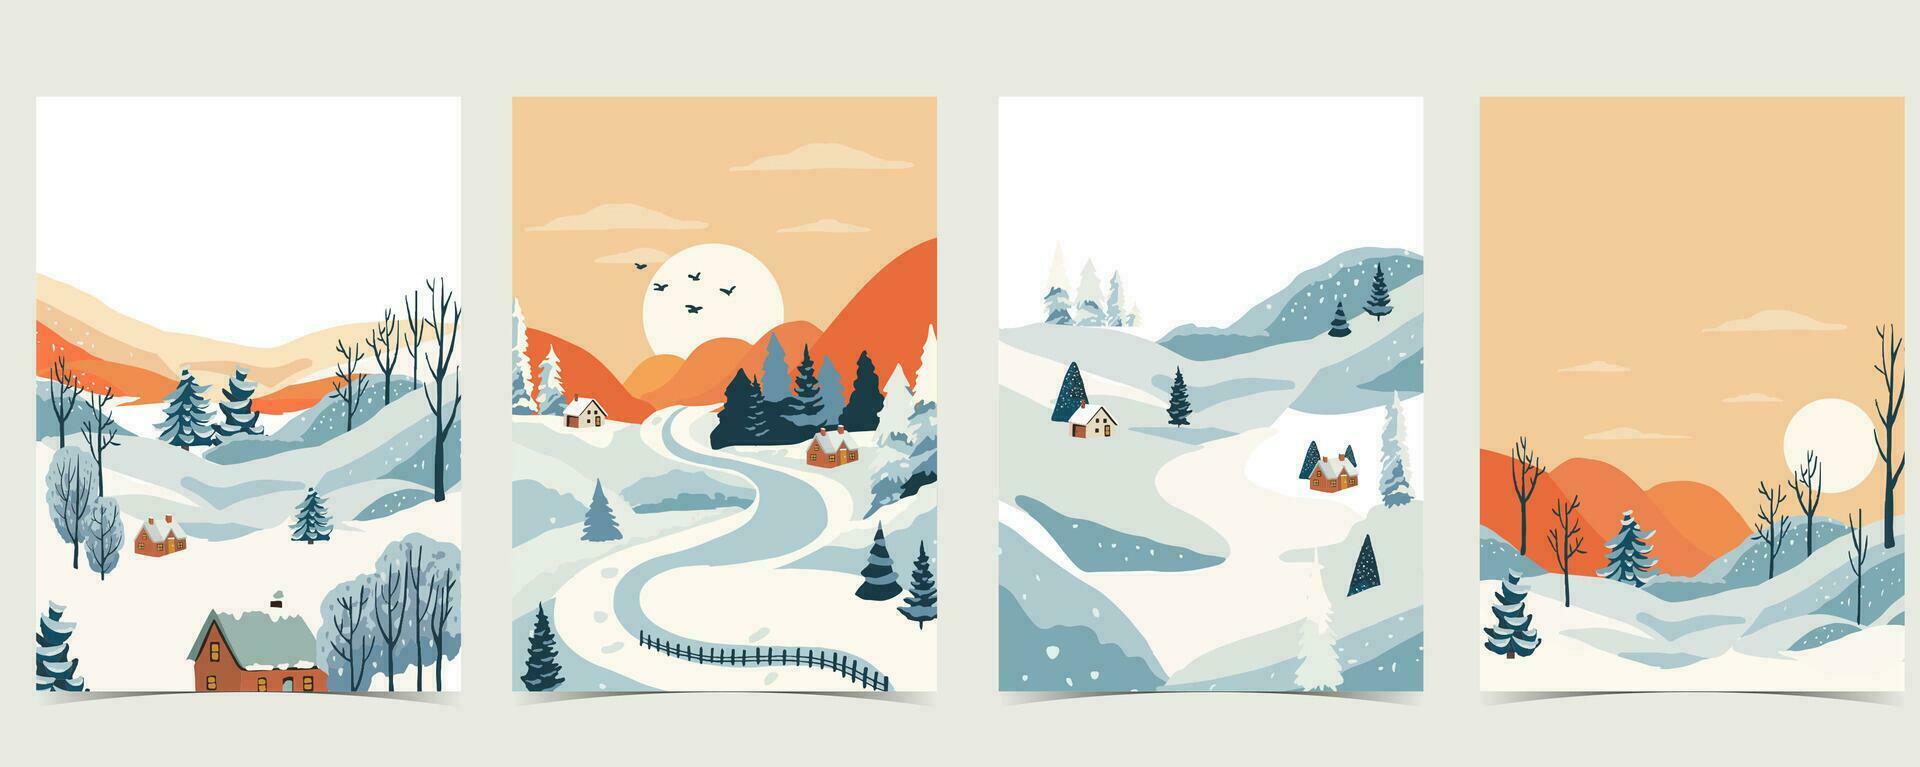 invierno paisaje antecedentes con montaña,árbol.editable vector ilustración para postal, a4 vertical Talla